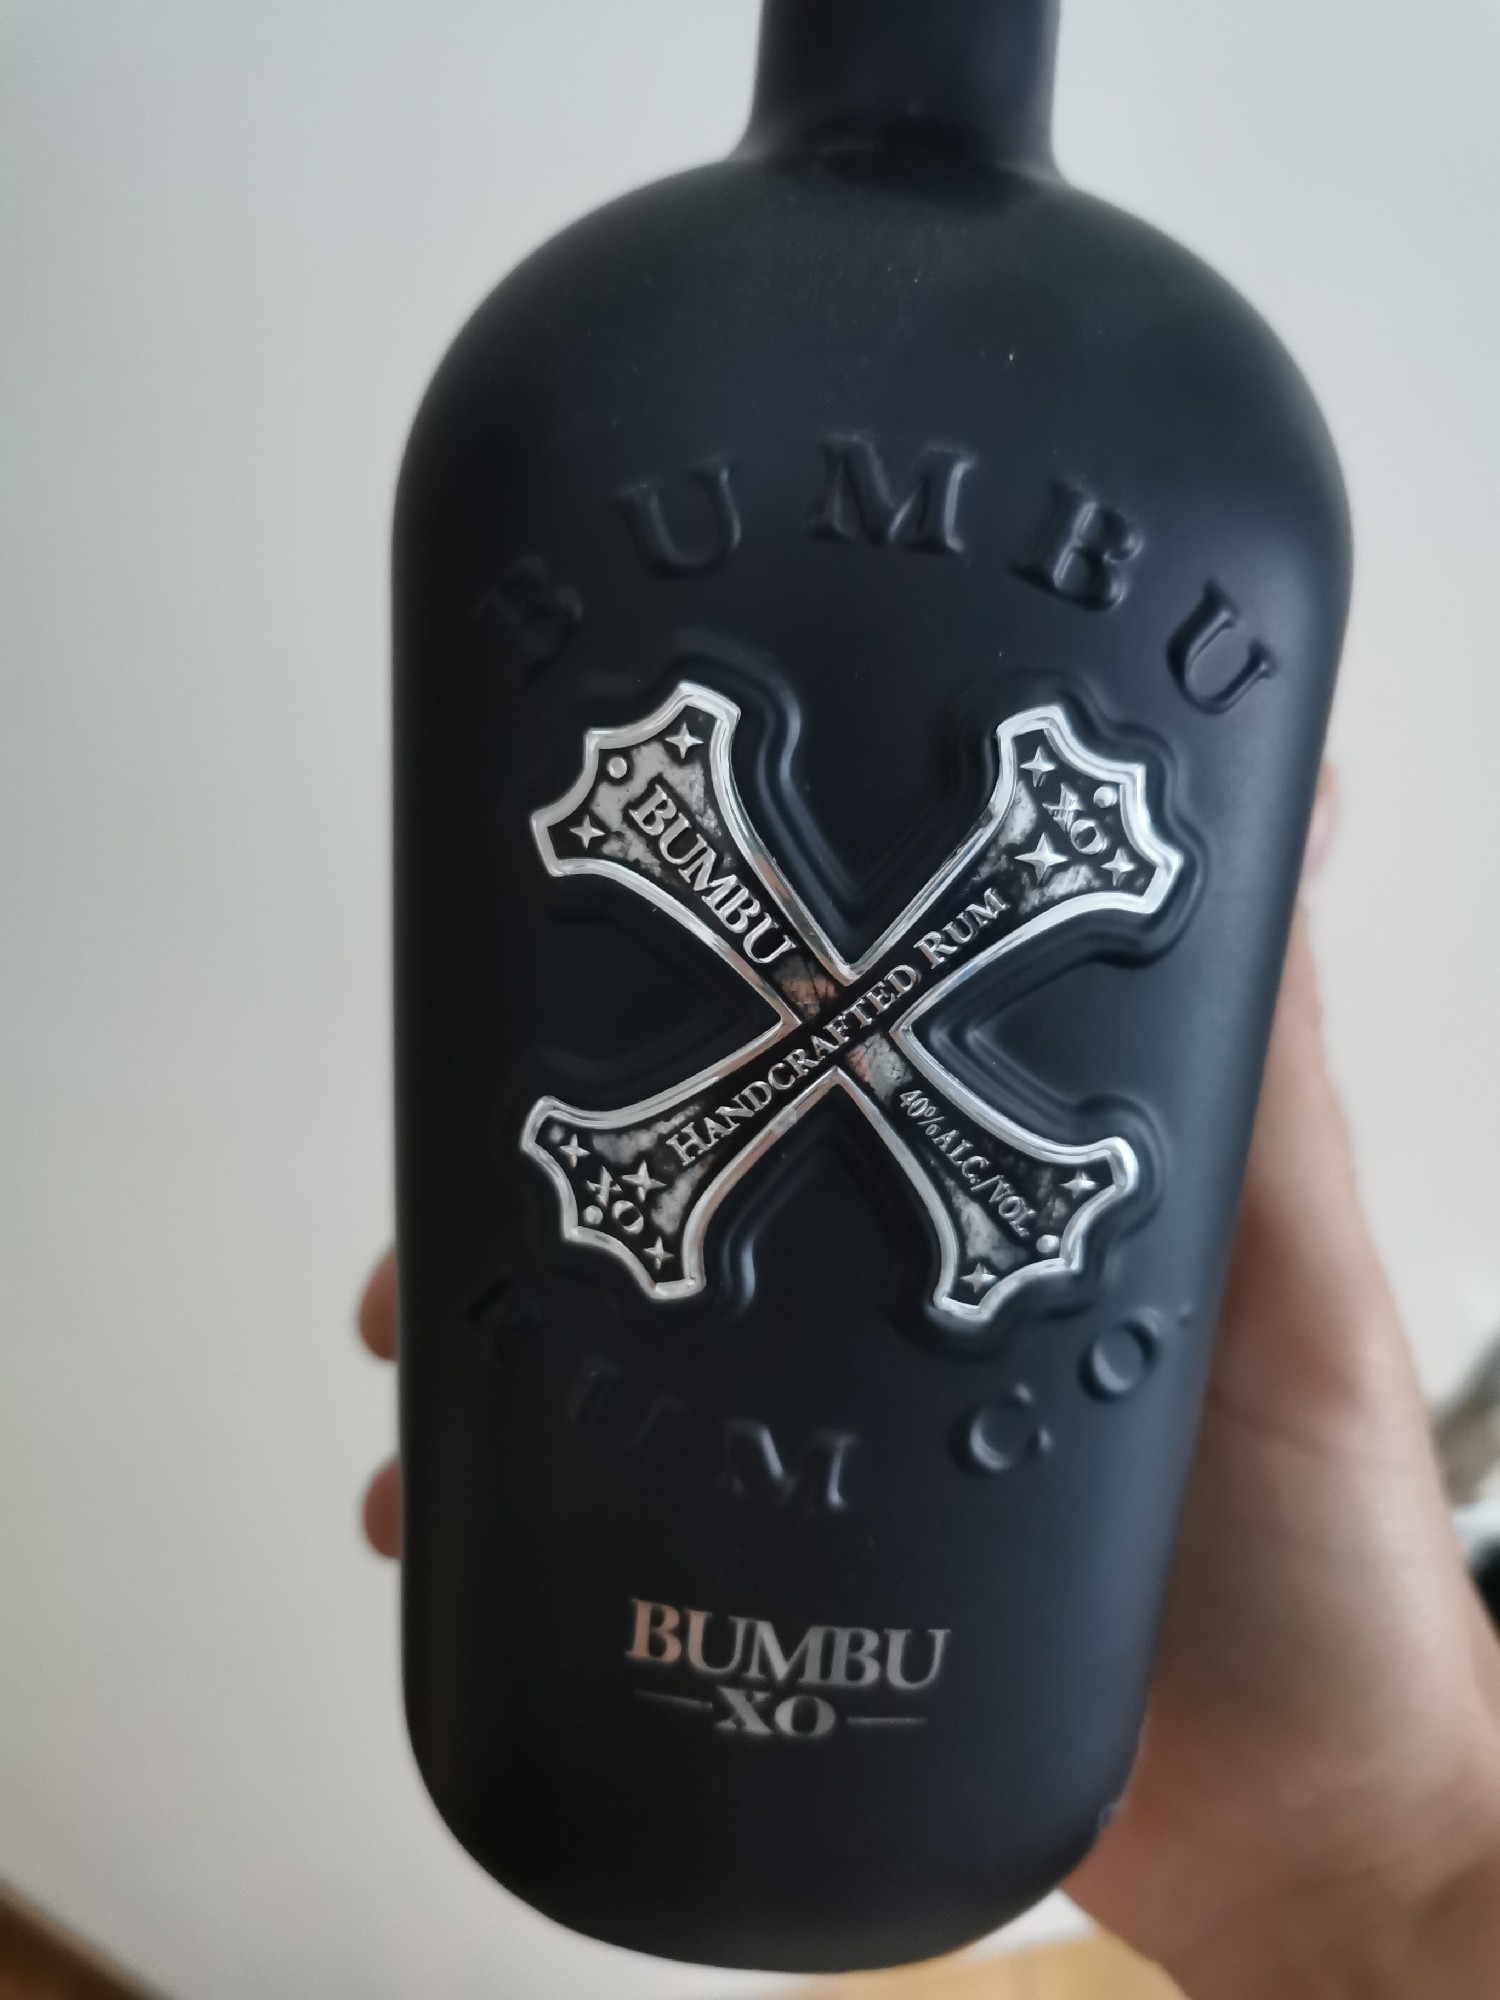 Photo of the bottle taken from user Rumpalumpa